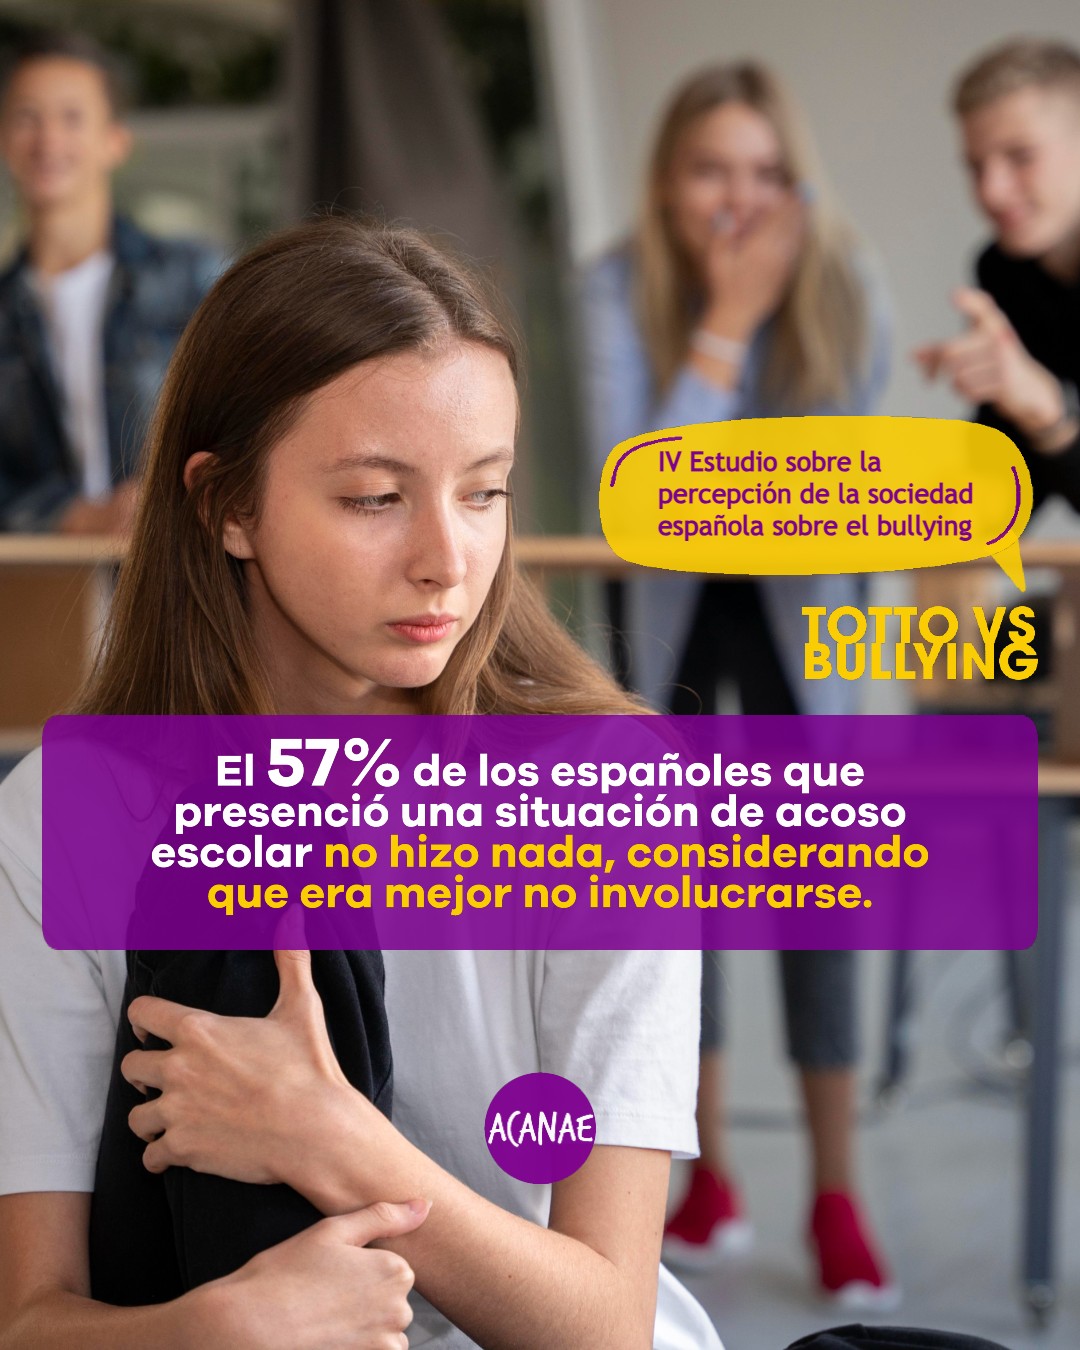 El 57% de los españoles que presenció una situación de acoso escolar no hizo nada, considerando que era mejor no involucrarse.